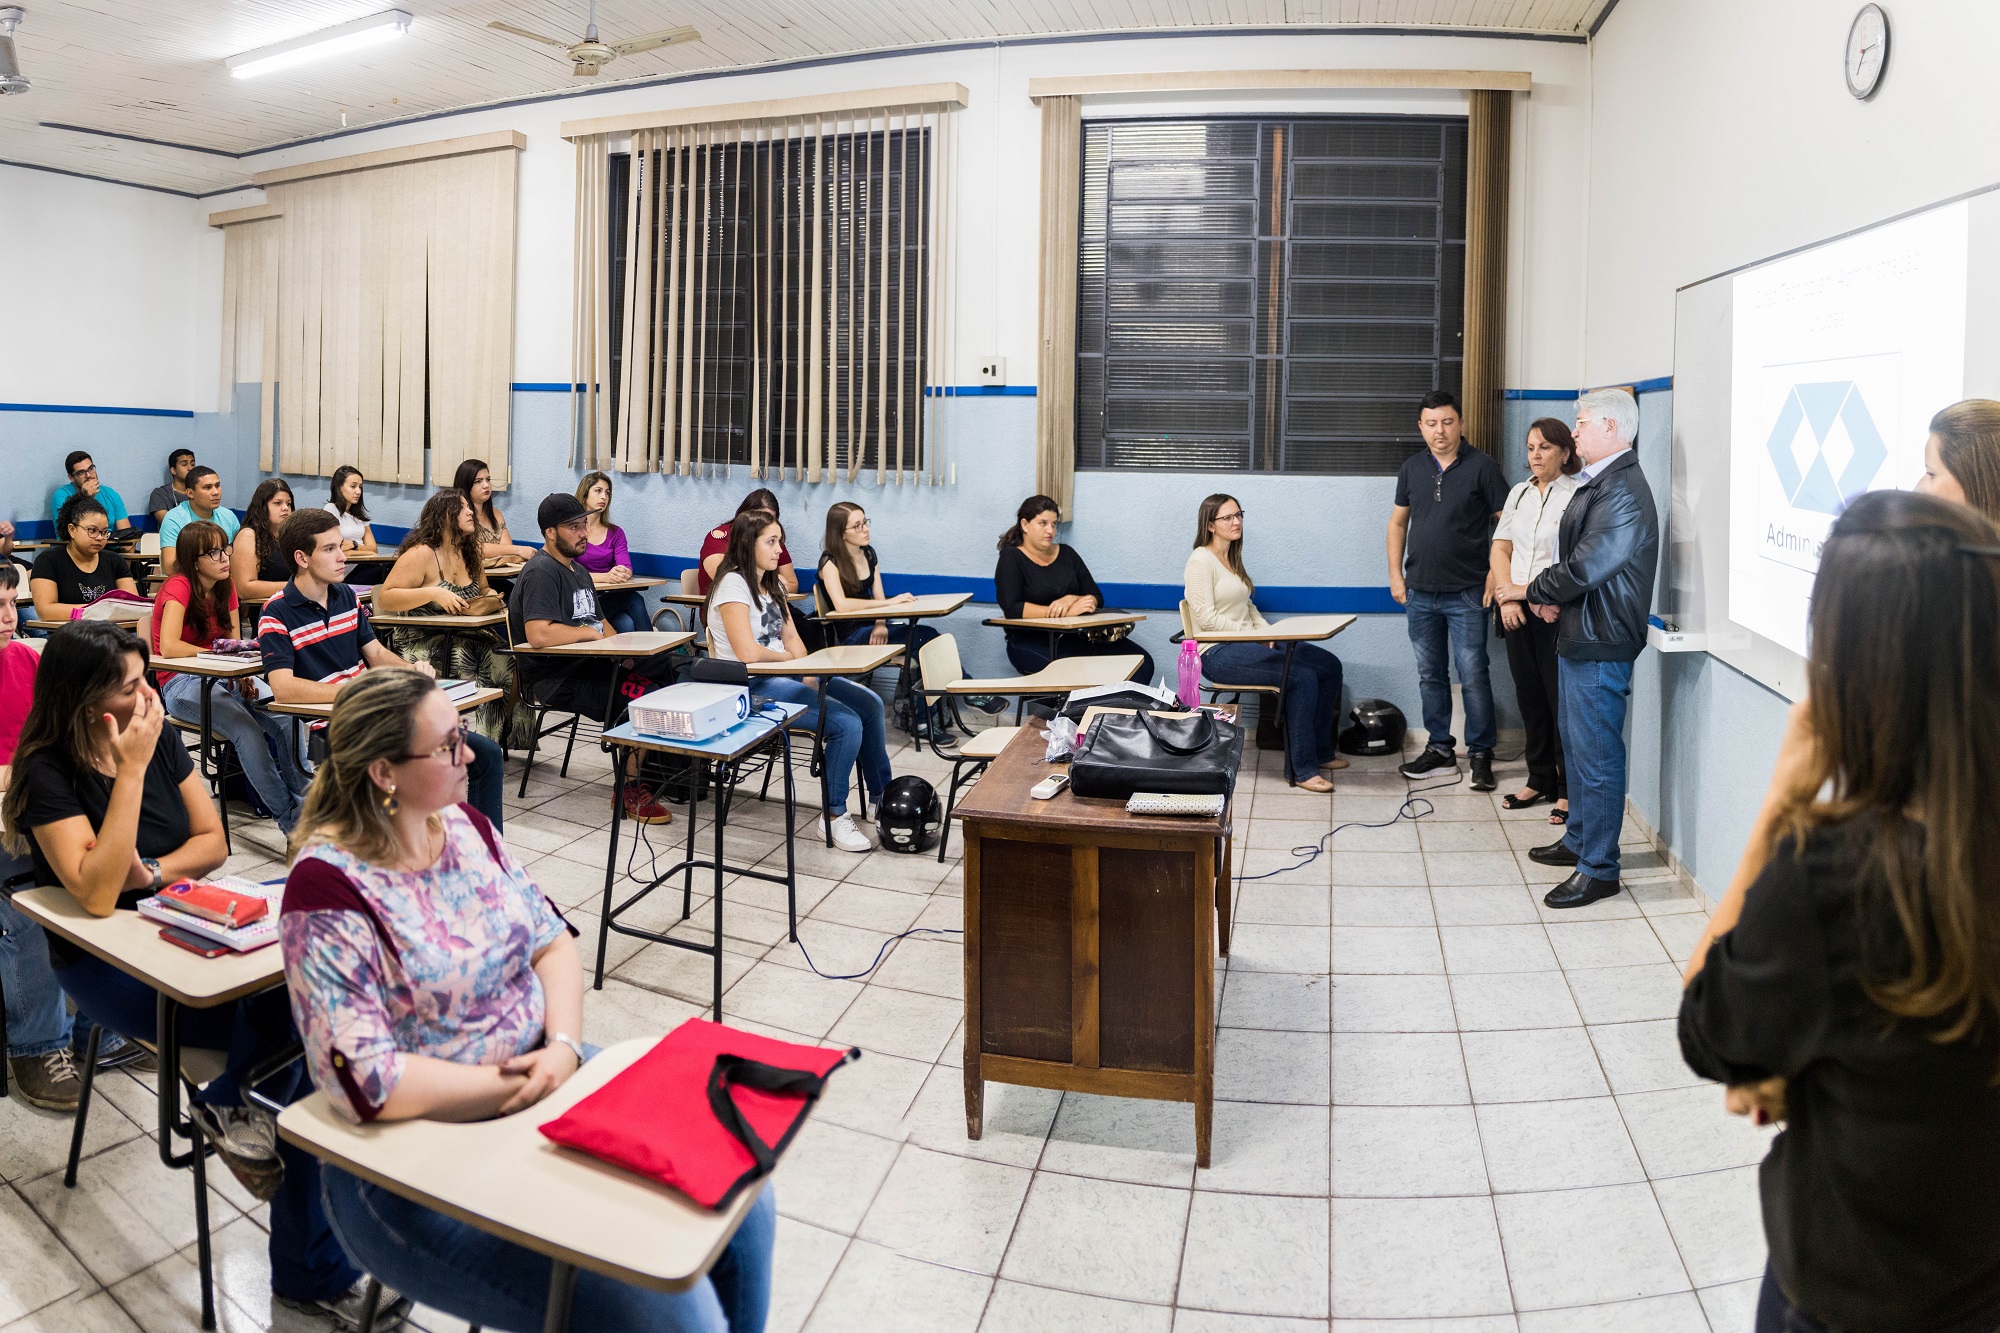 Prefeito Bica dá as boas vindas aos alunos da ETEC - Extensão de Urupês. Foto: Luís Fernando da Silva / Prefeitura Municipal de Urupês